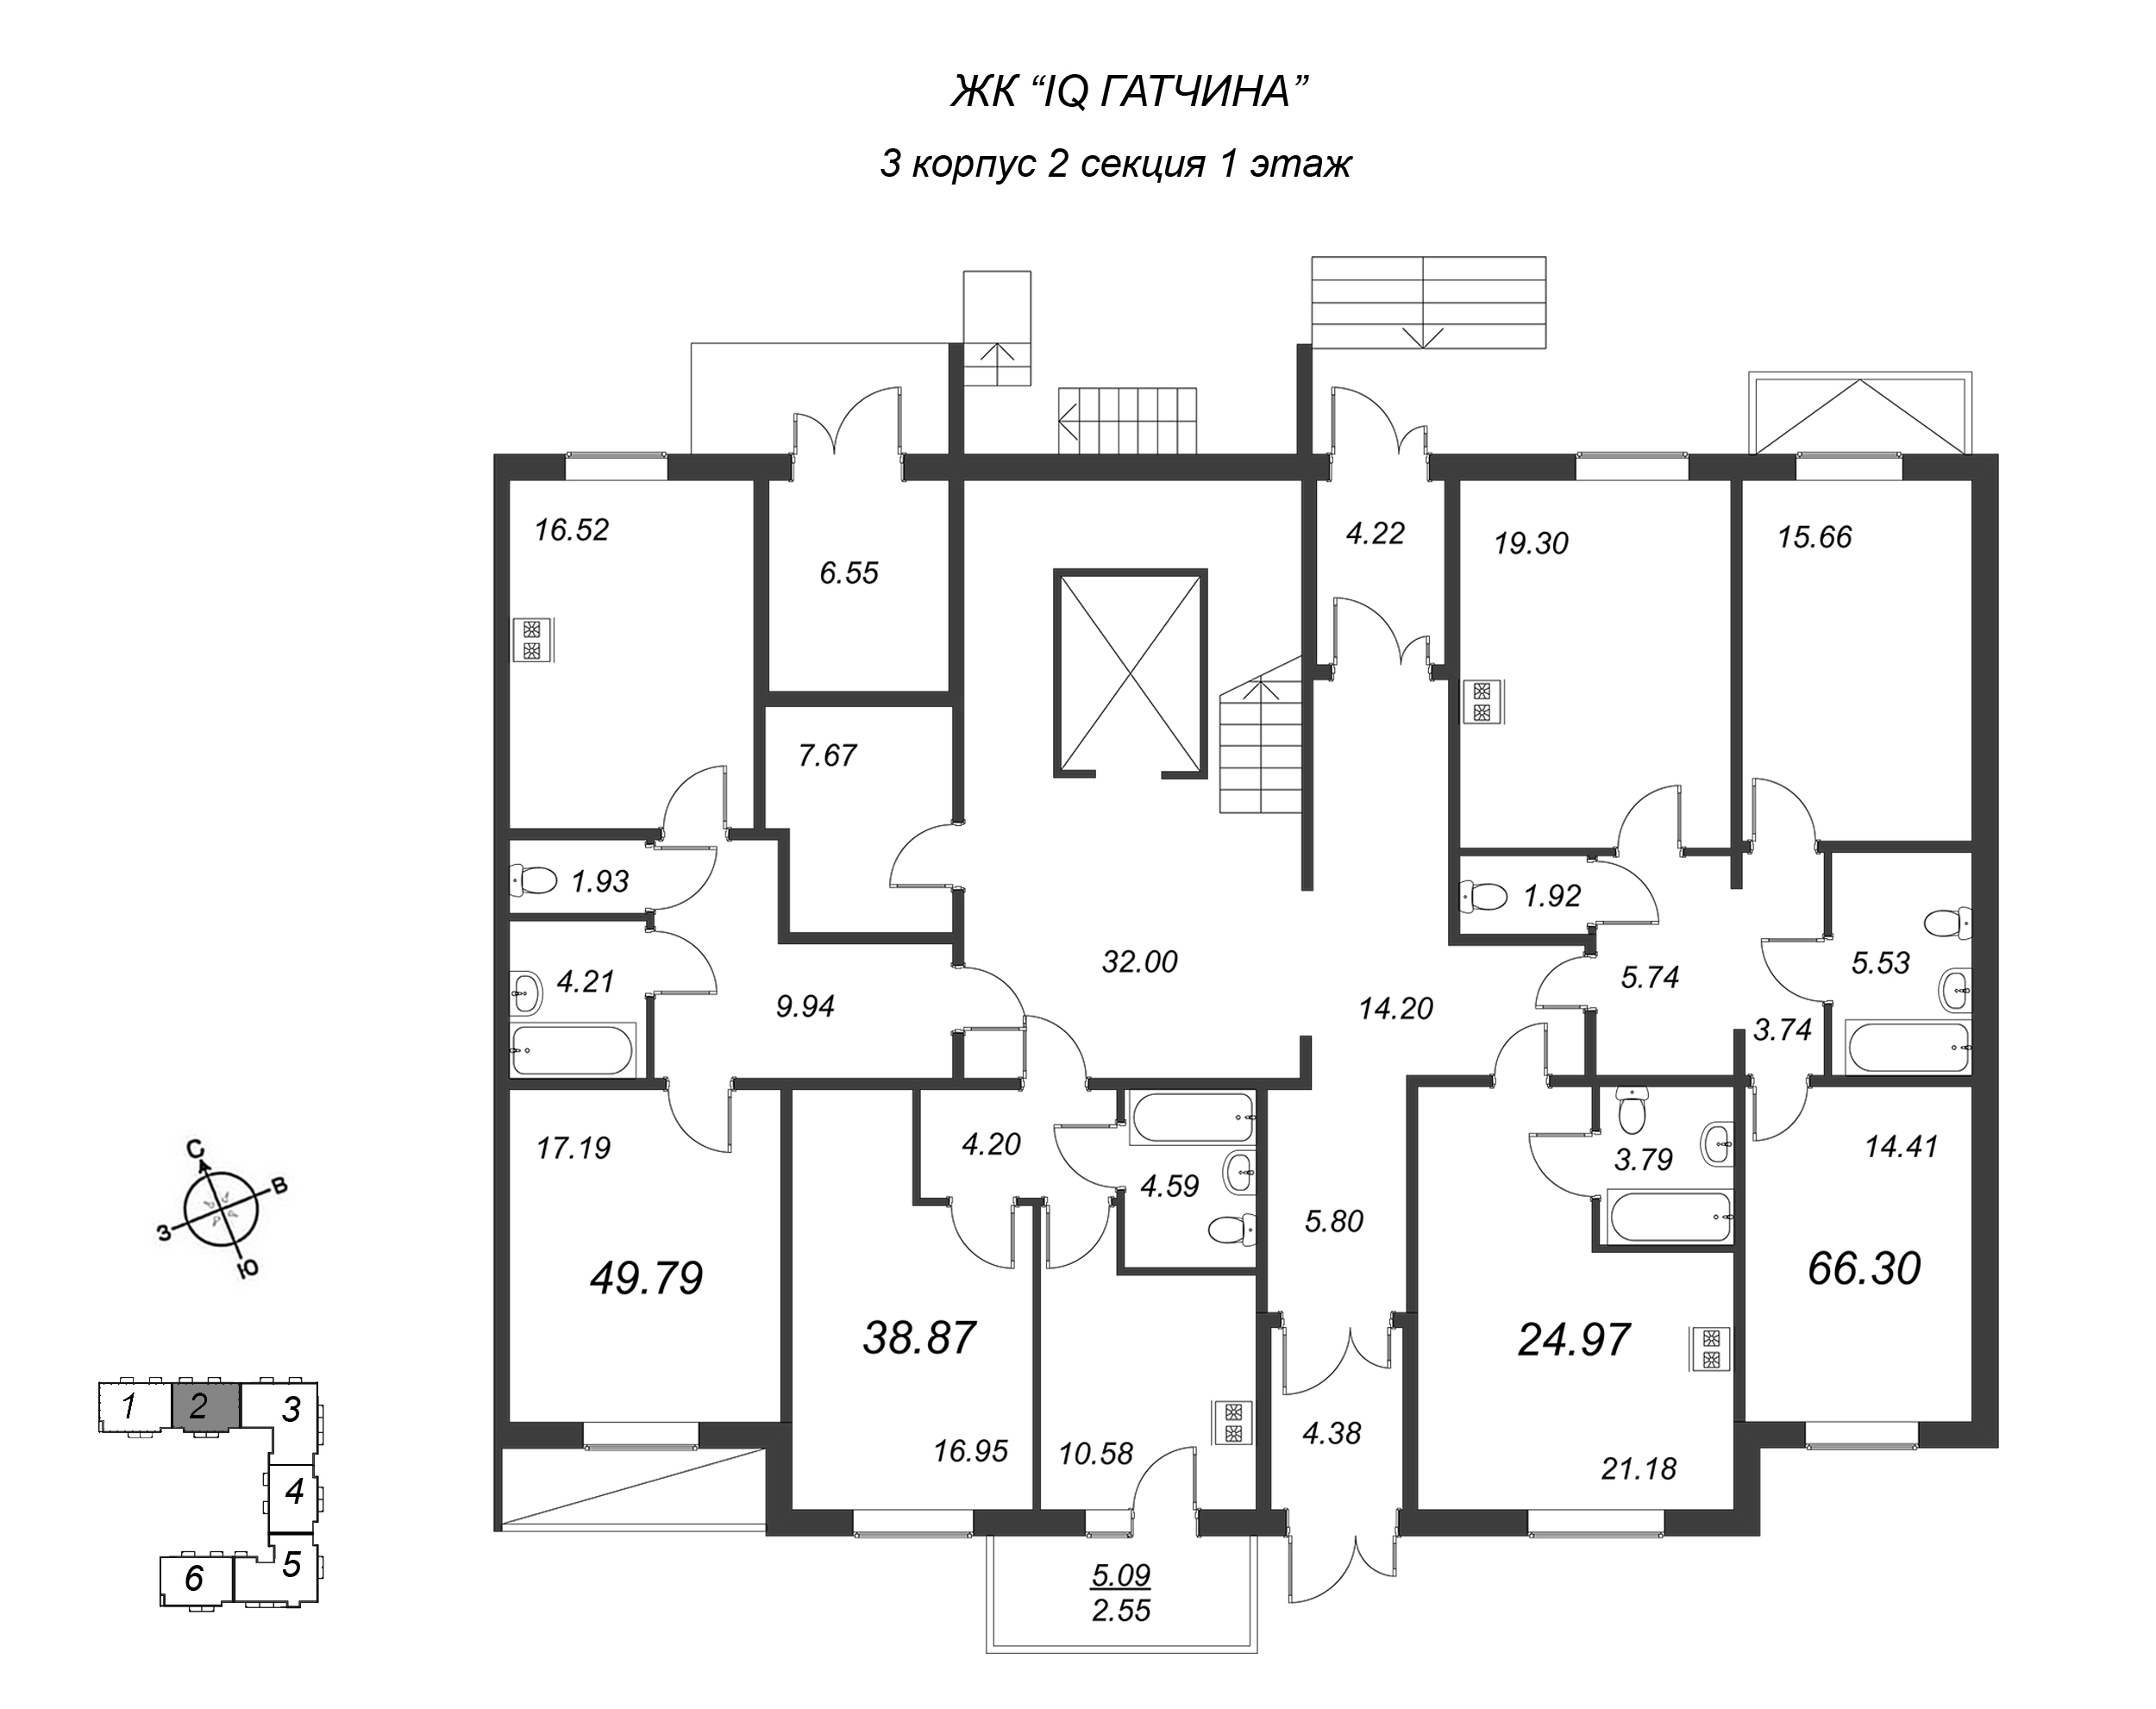 2-комнатная квартира, 66.3 м² в ЖК "IQ Гатчина" - планировка этажа